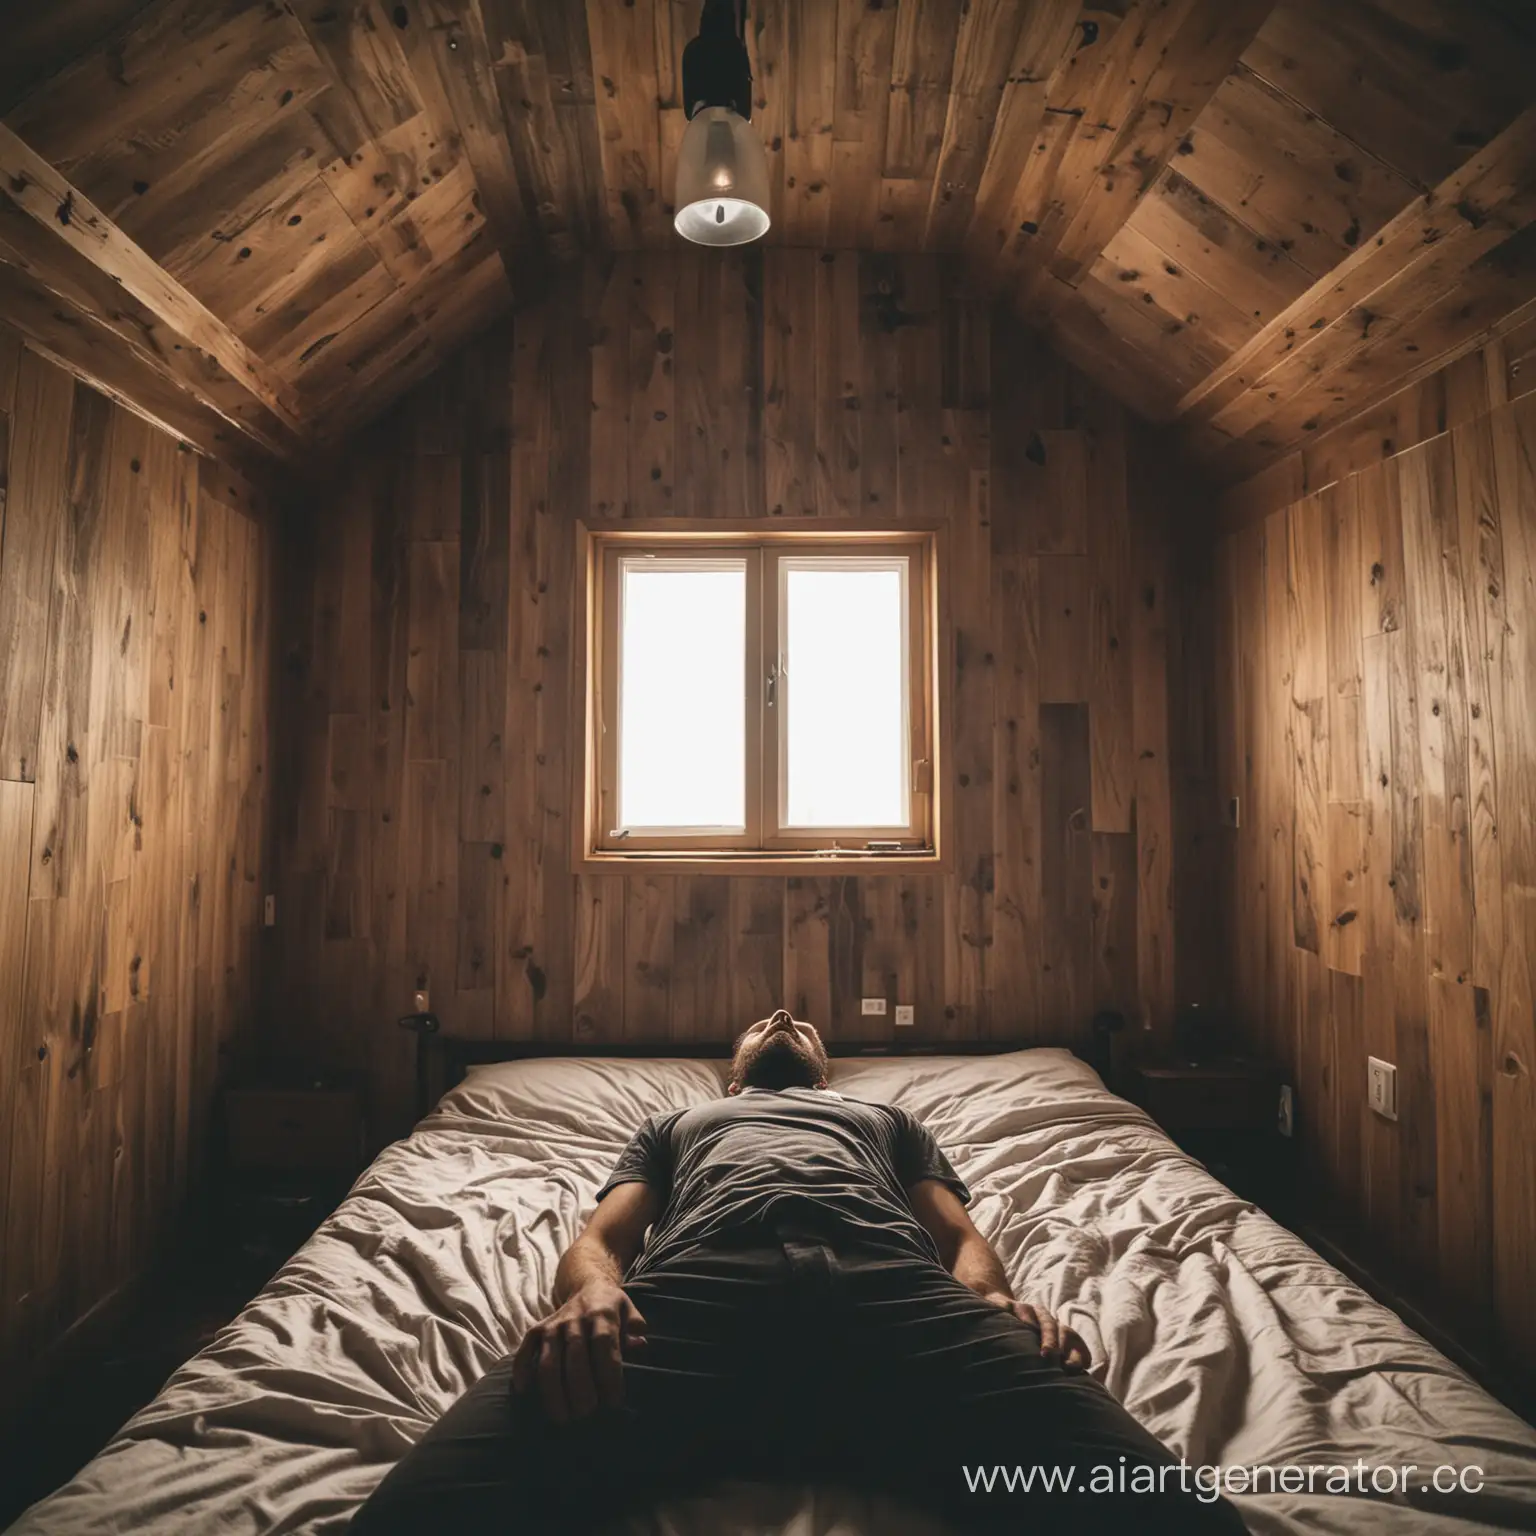 Мужчина 25  лет заходит в деревянную комнату и видит бородатого мужика 40 лет, который лежит на кровати. Атмосфера в комнате мрачная 